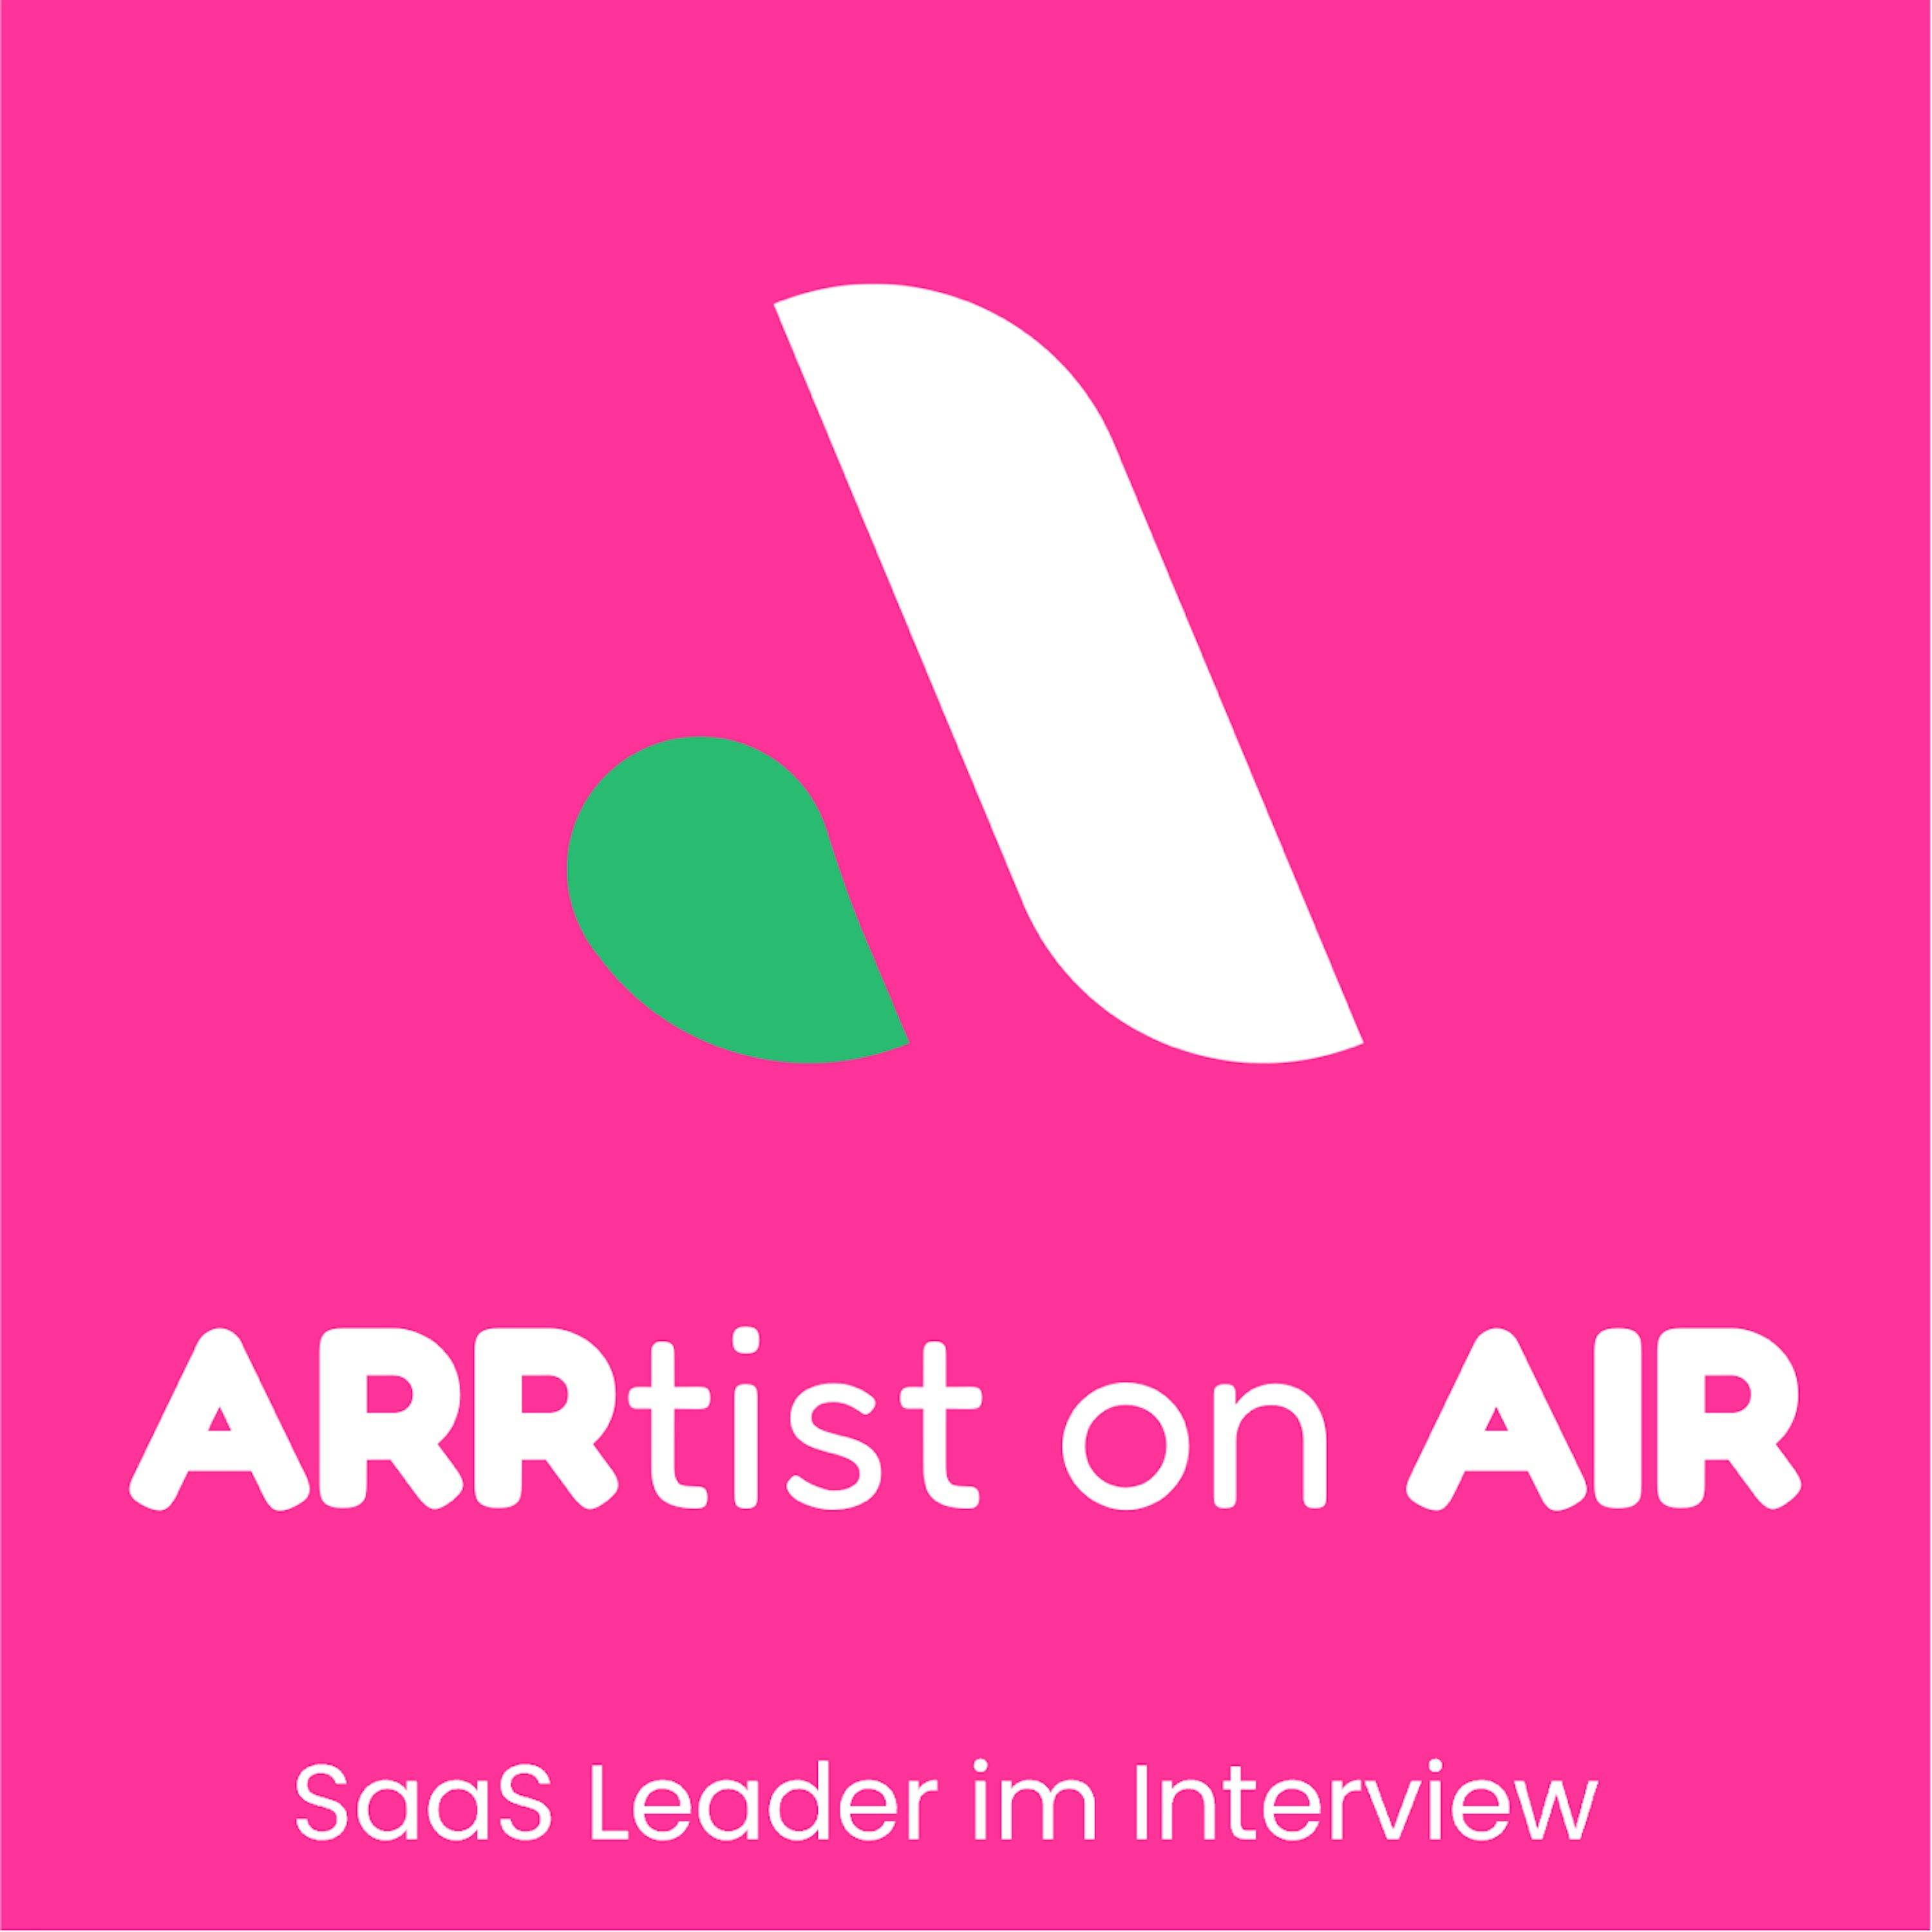 arrtist on air podcast